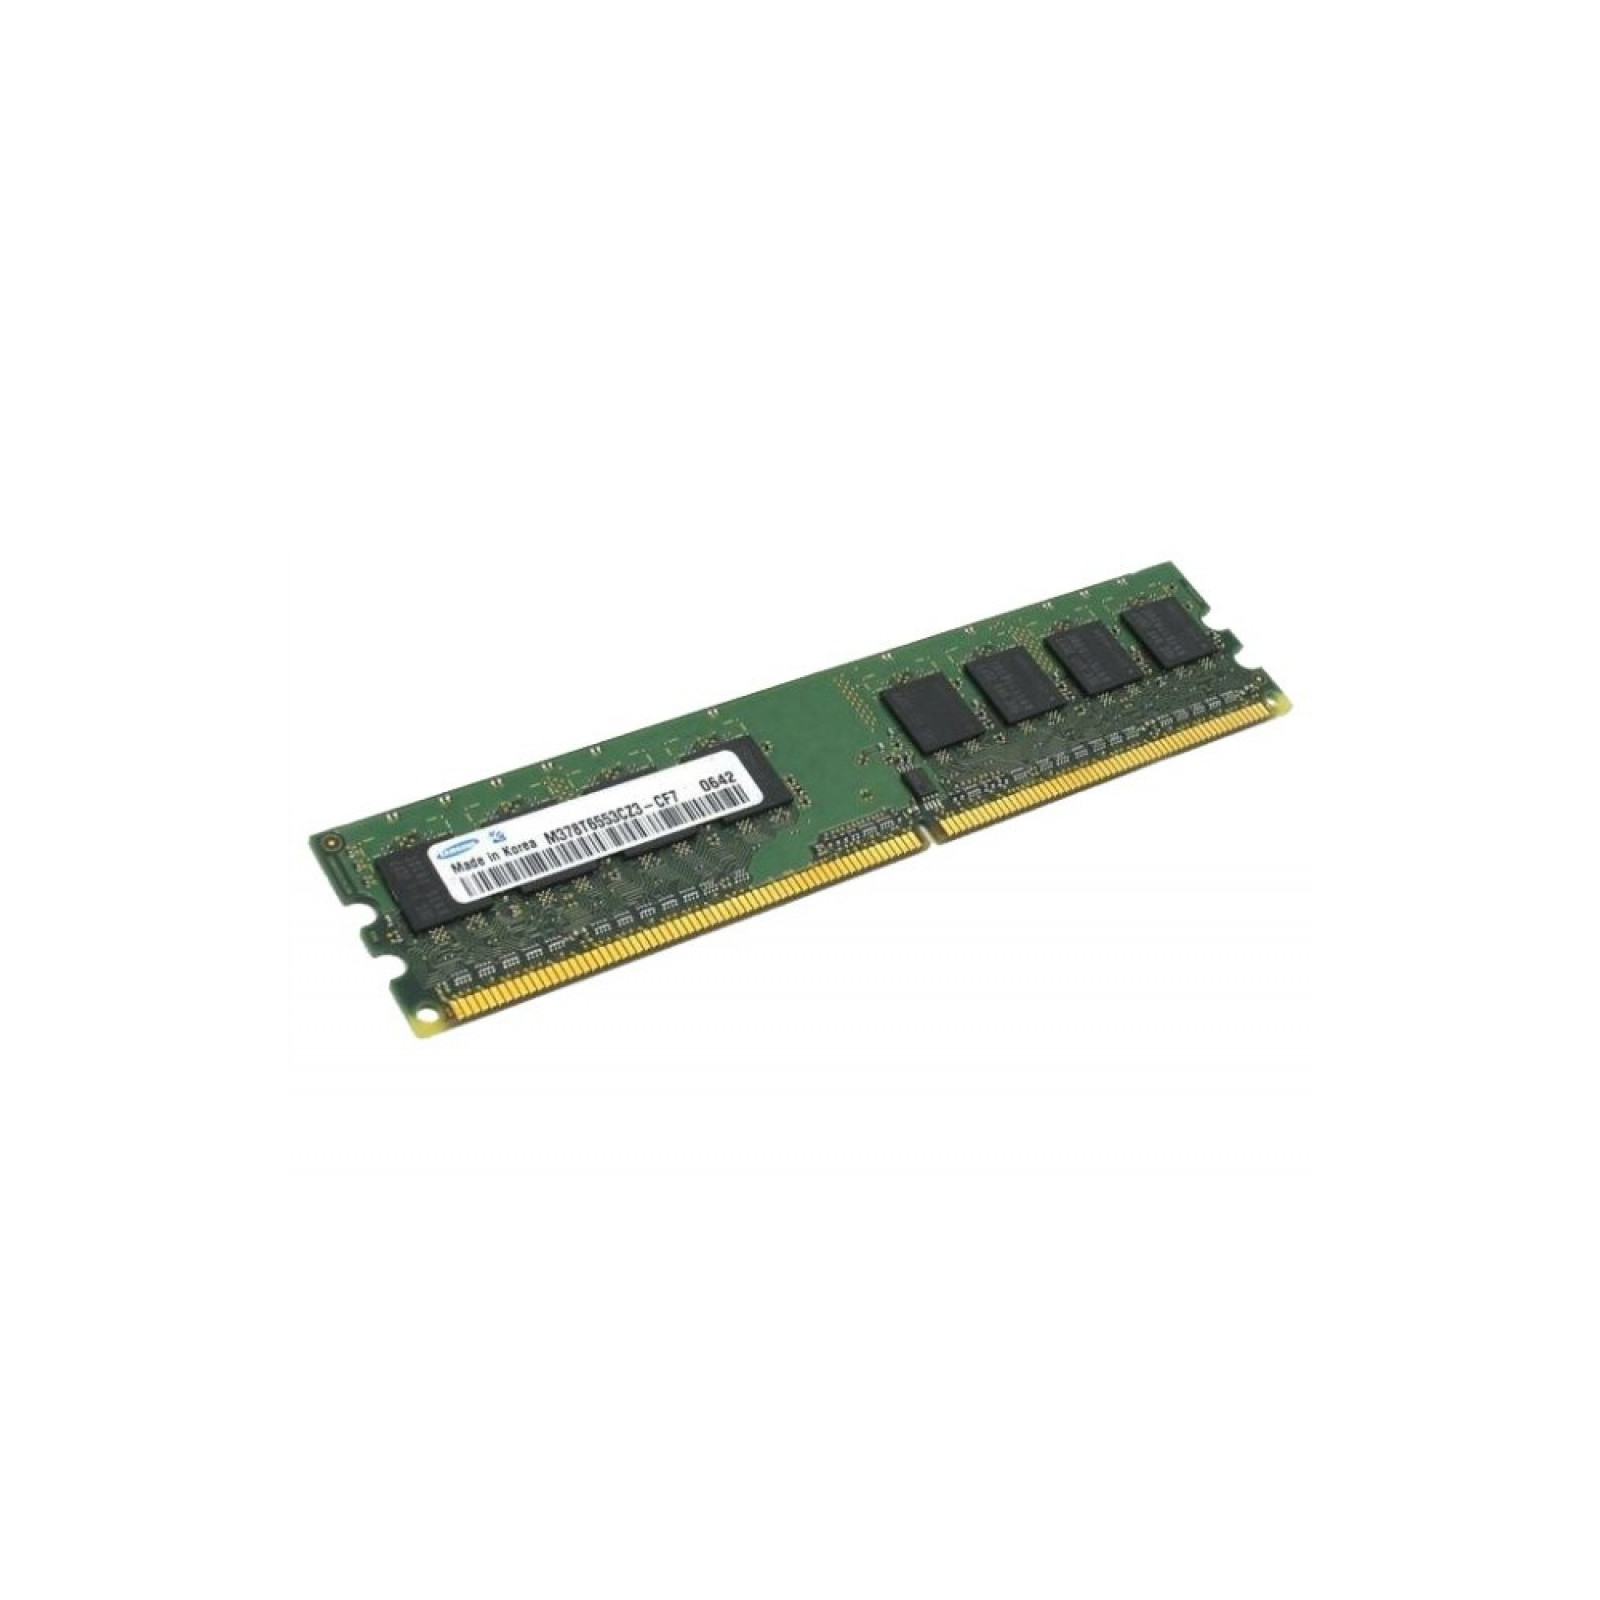 Модуль пам'яті для комп'ютера DDR2 2GB 800 MHz Samsung (M378T5663EH3-CF7)